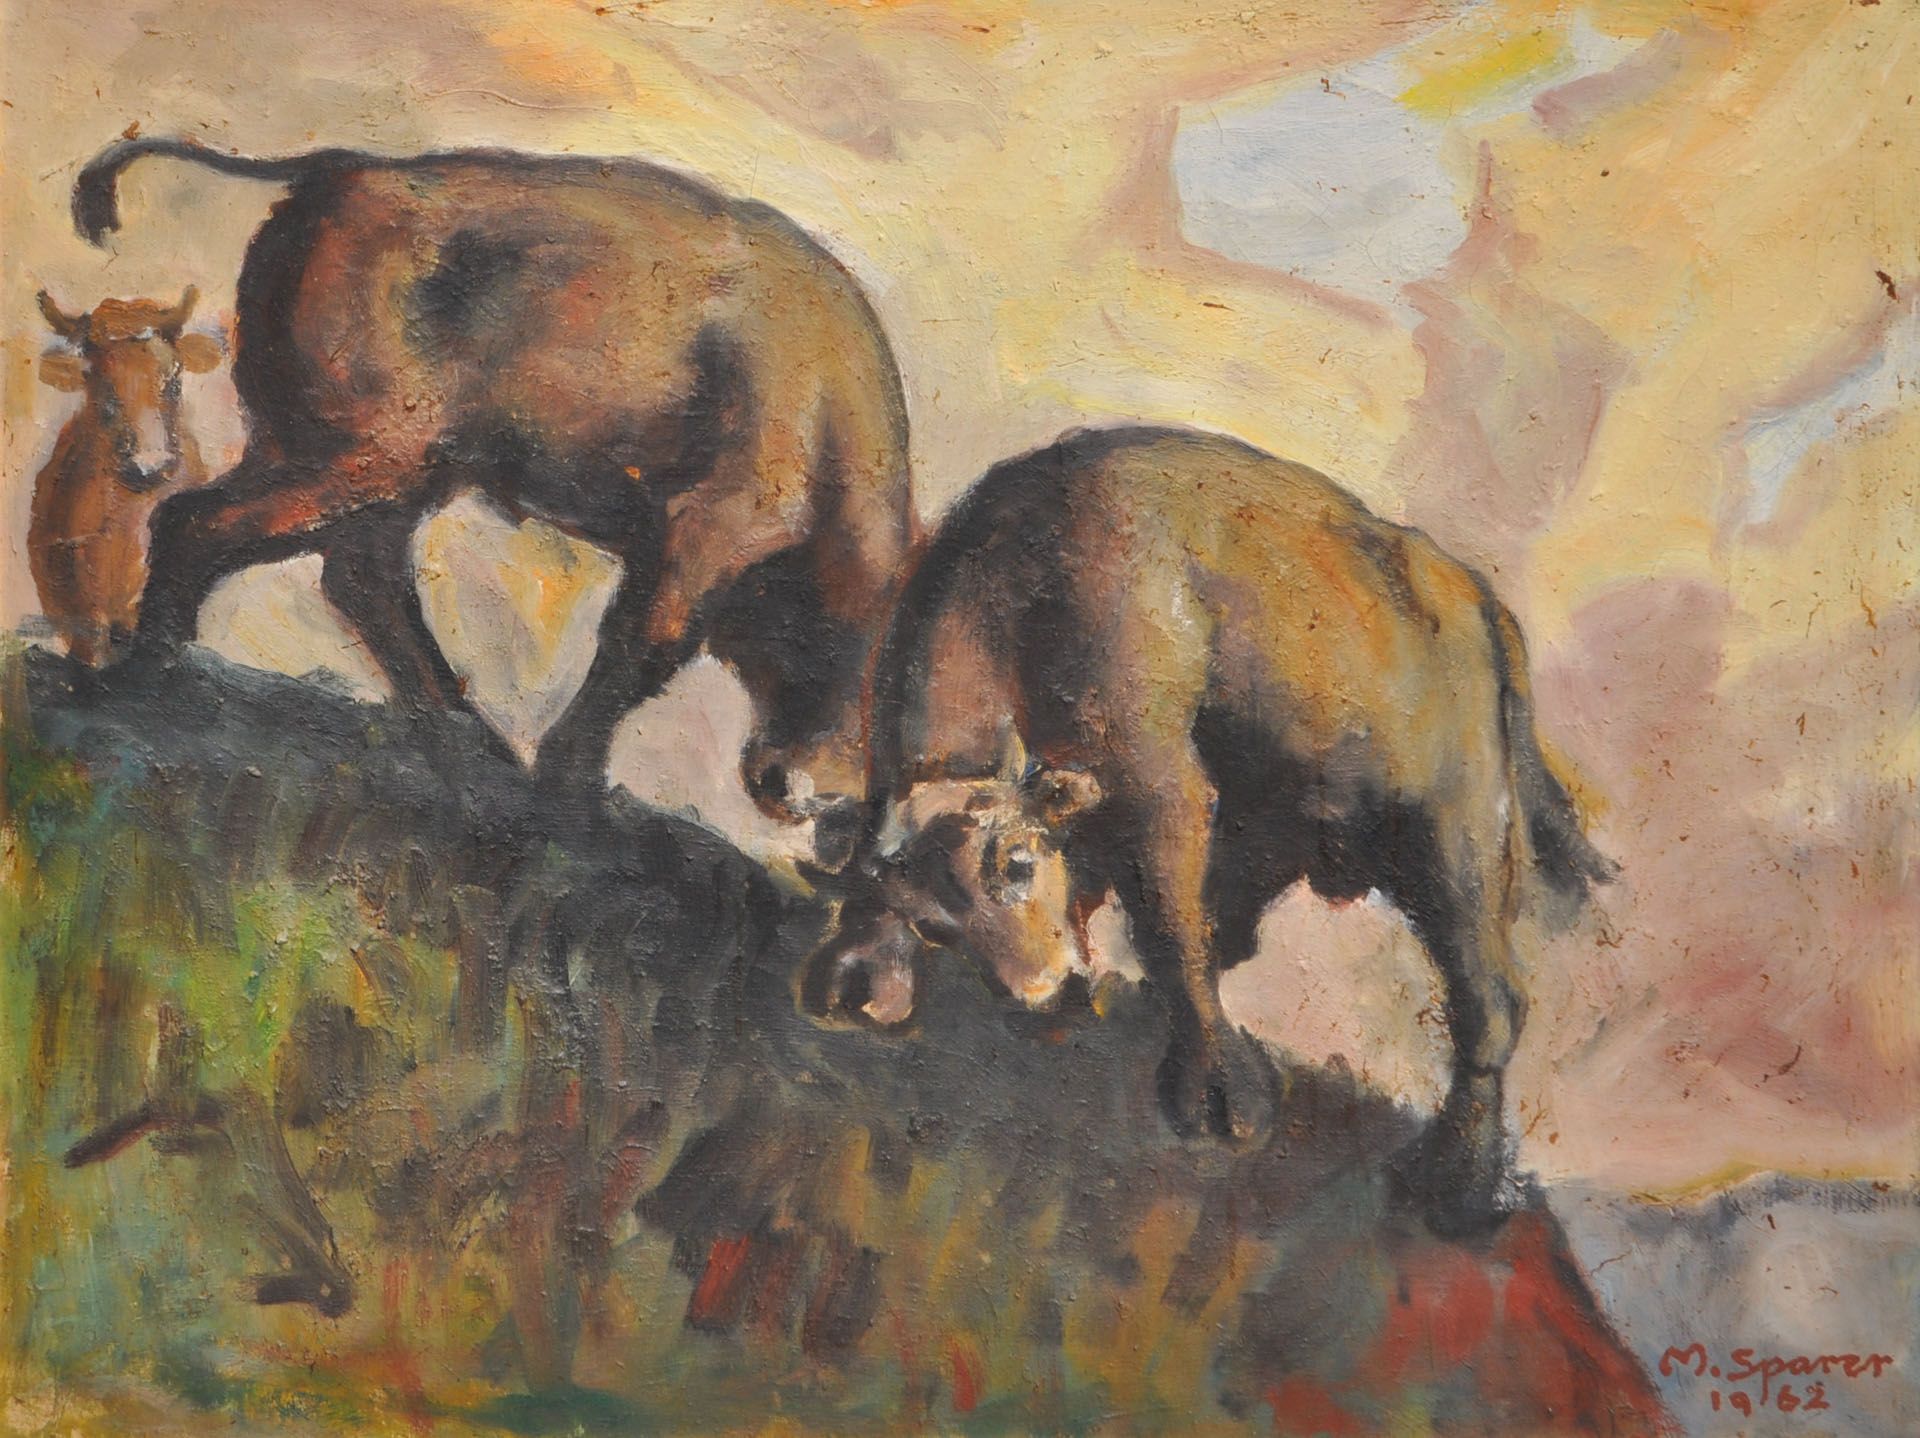 Max Sparer - Kämpfende Kühe, 1962